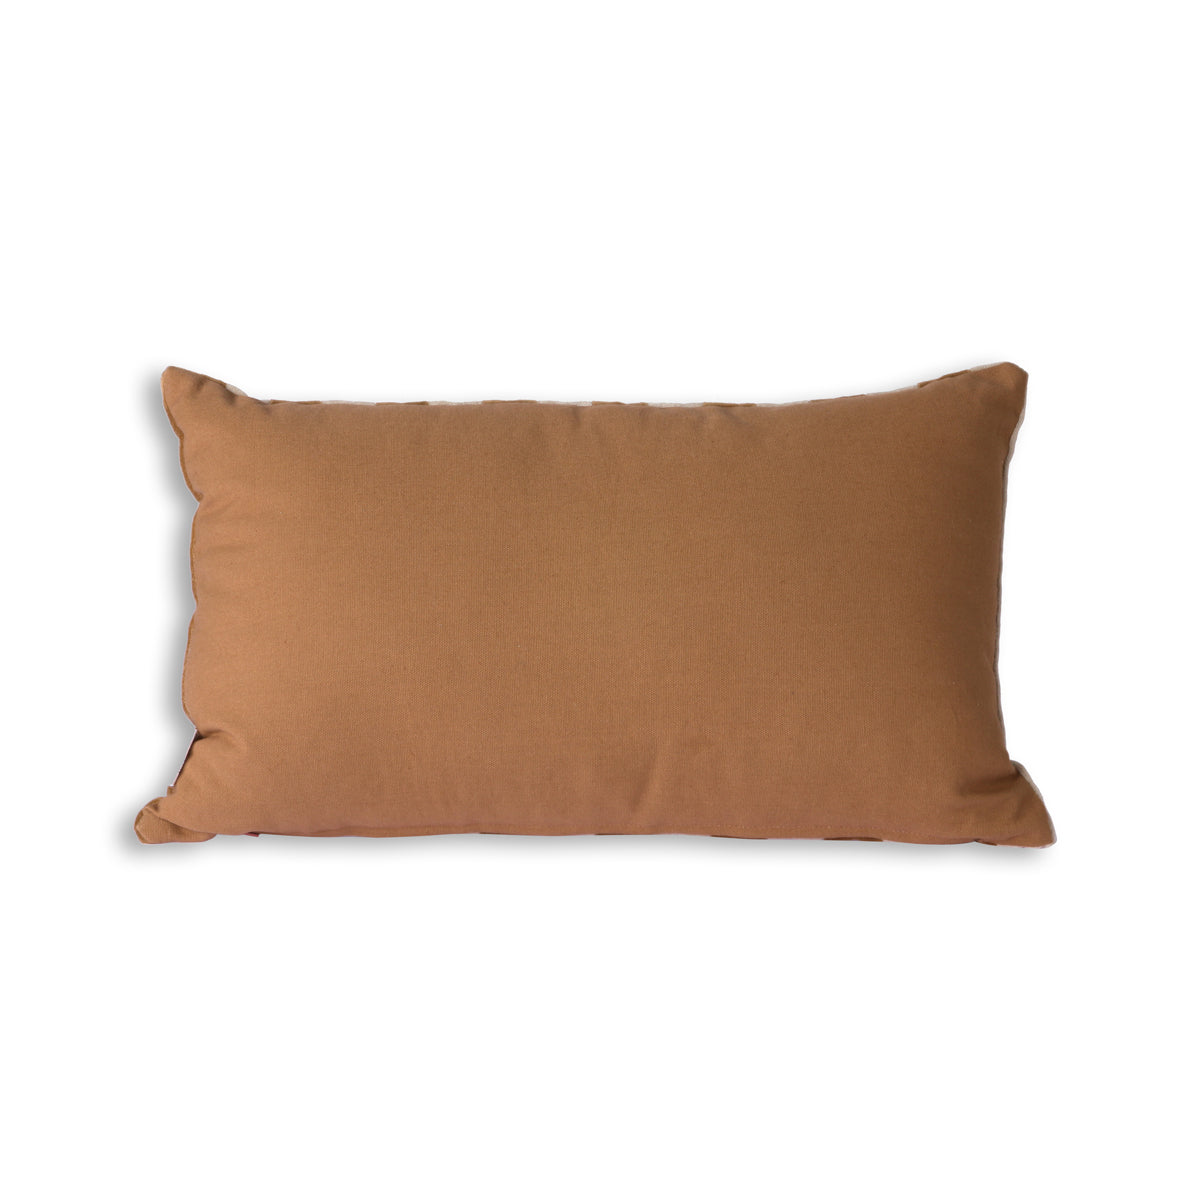 HK living striped velvet cushion brown/natural (40x60)